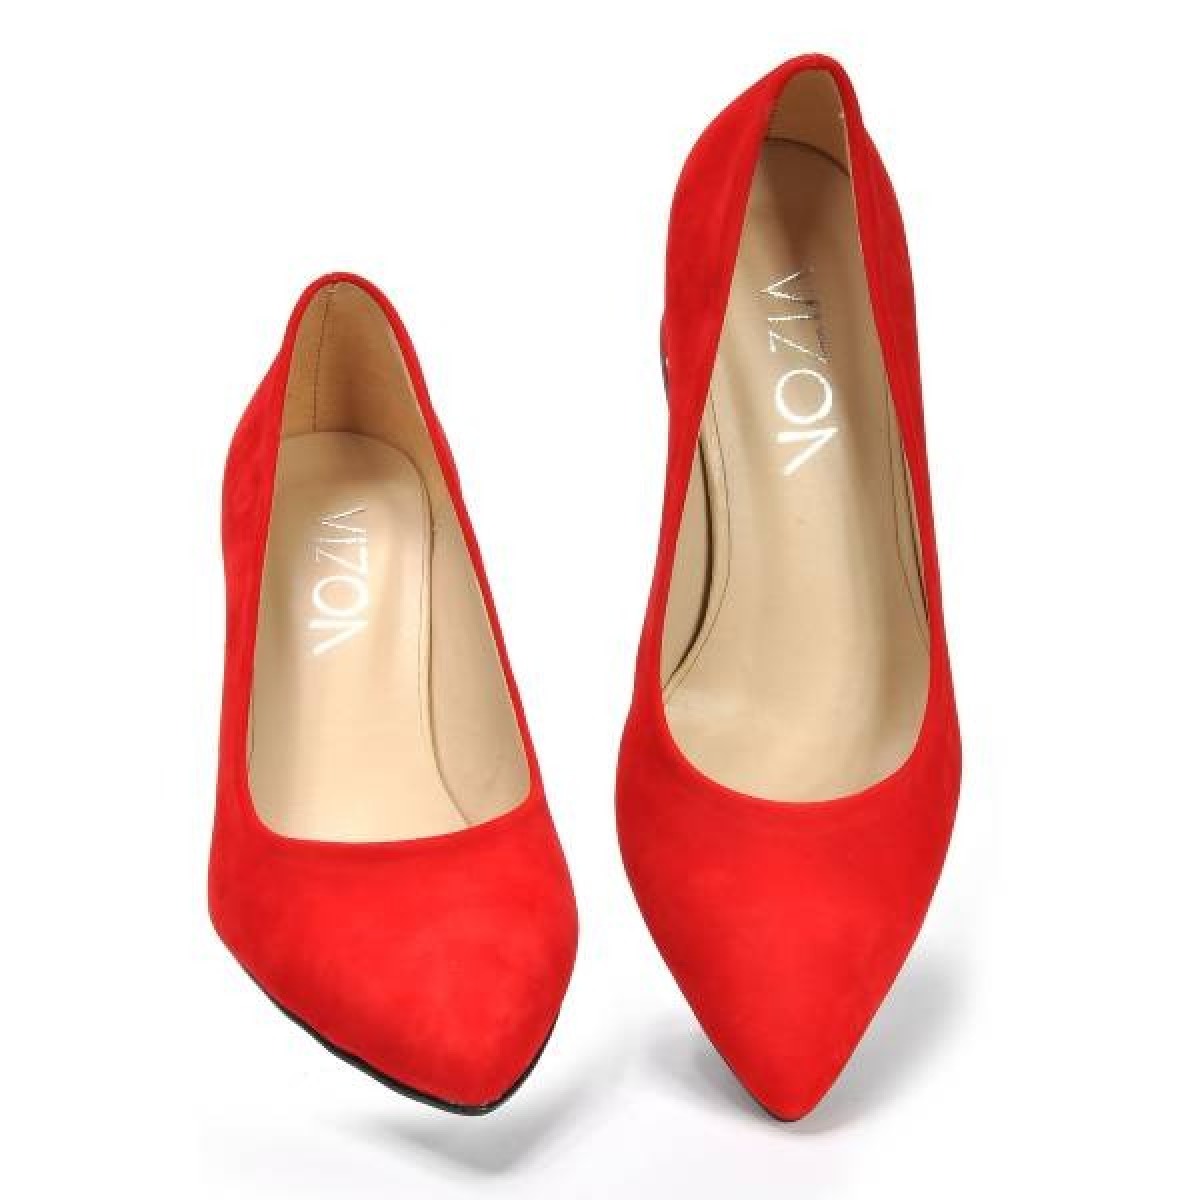 Flo Kadın  Kırmızı-Süet Klasik Topuklu Ayakkabı VZN19-111K. 6